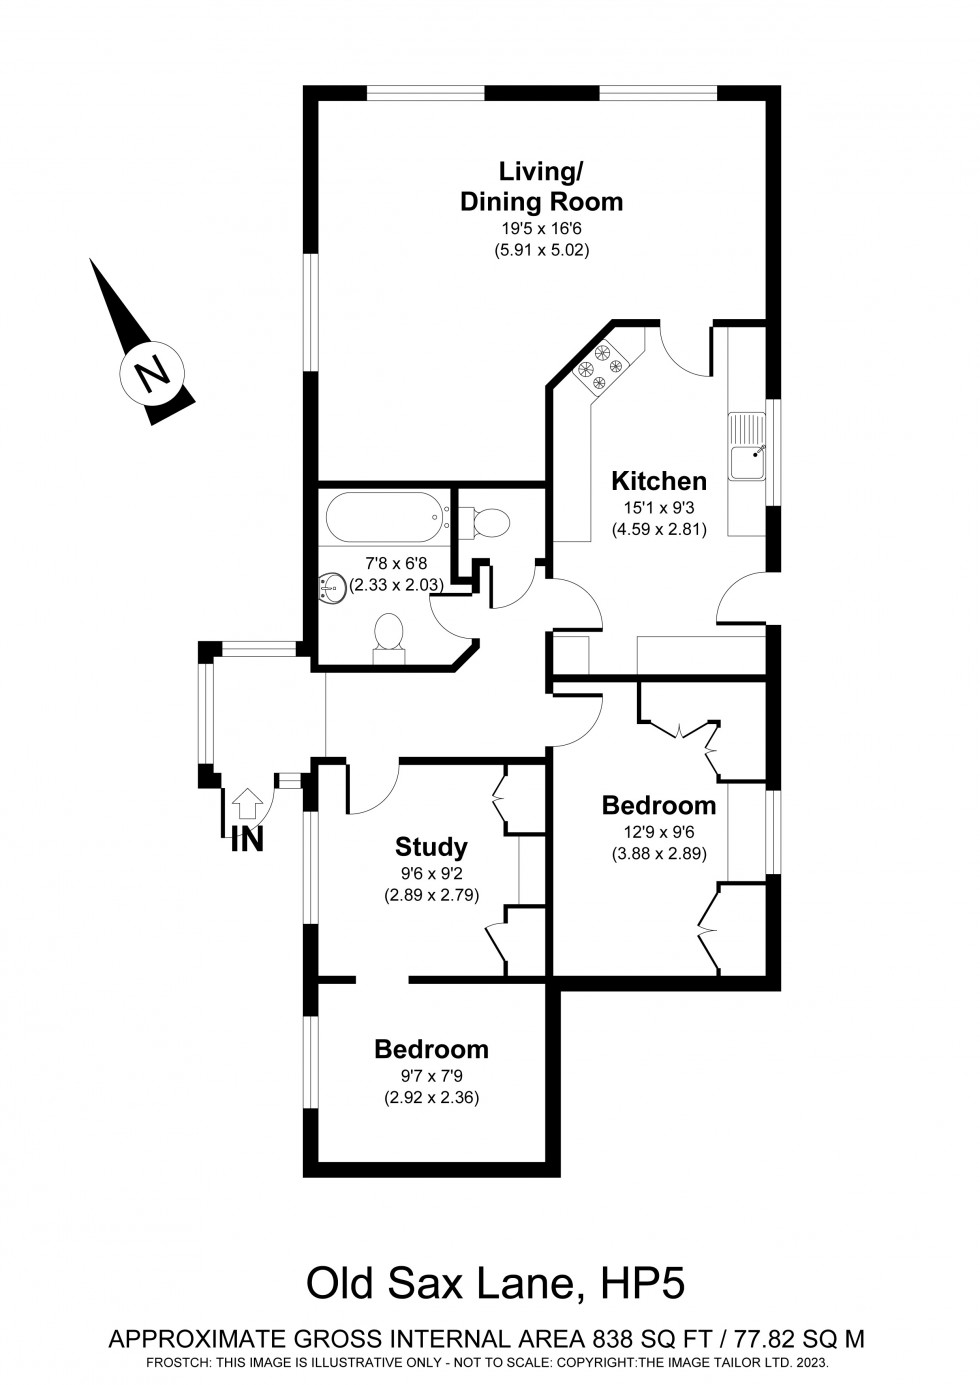 Floorplan for Chartridge, Chesham, HP5